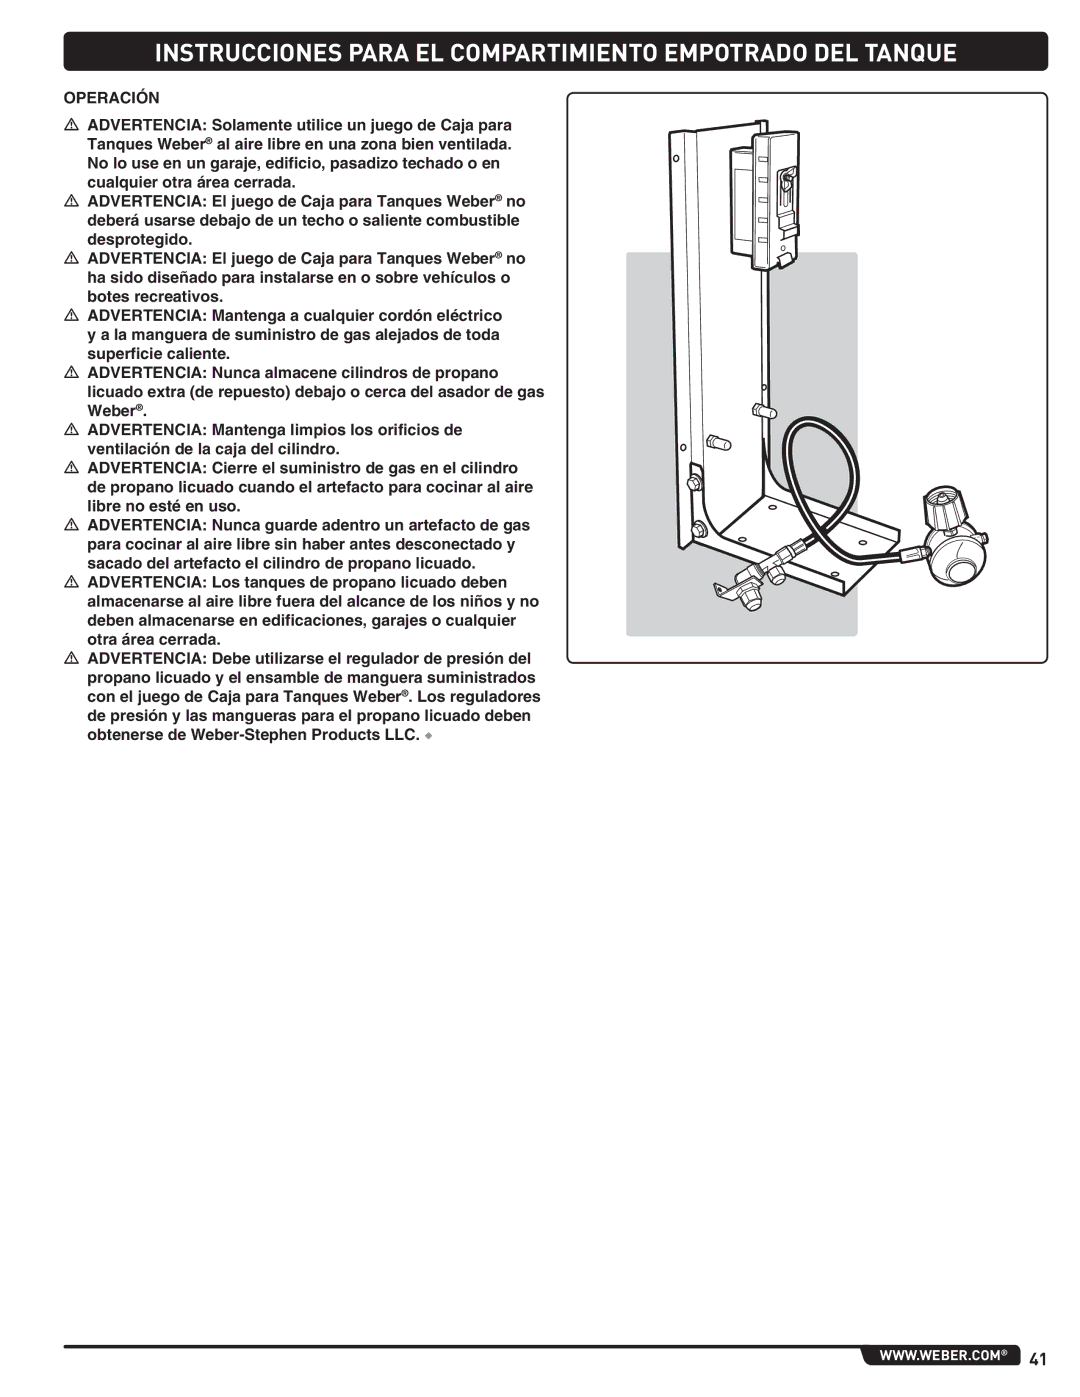 Weber 660- LP, Weber manual Instrucciones Para EL Compartimiento Empotrado DEL Tanque, Operación 